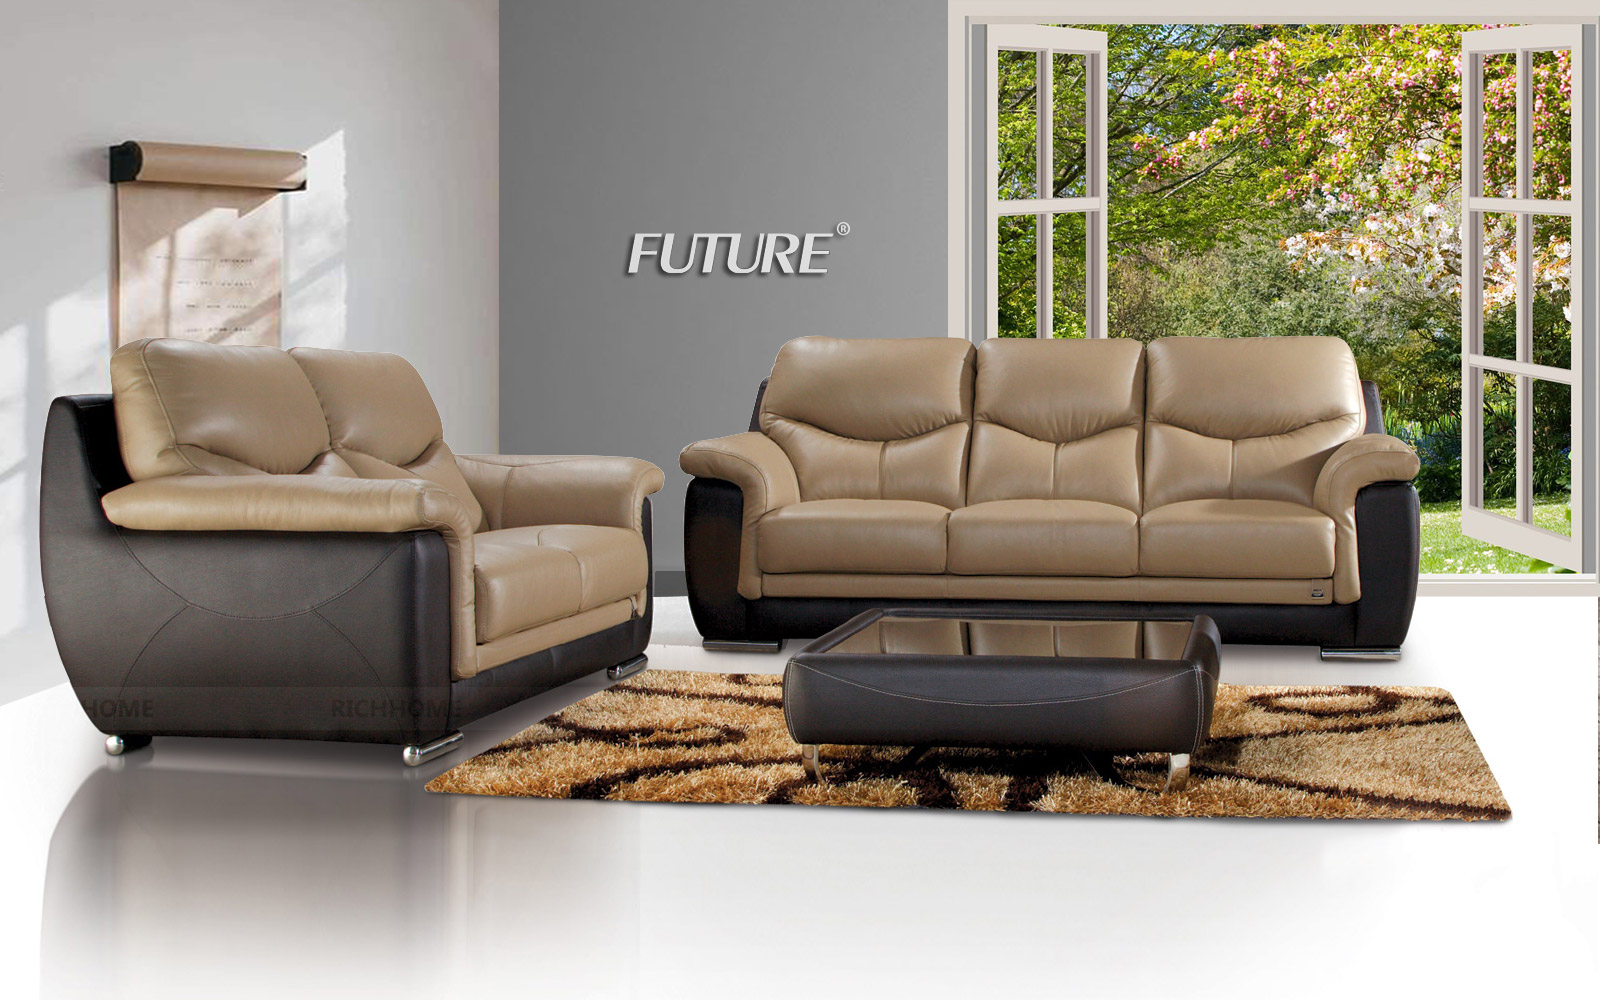 Mẫu sofa văng da bò đẹp lạ cho mọi kích thước phòng khách - Ảnh 11